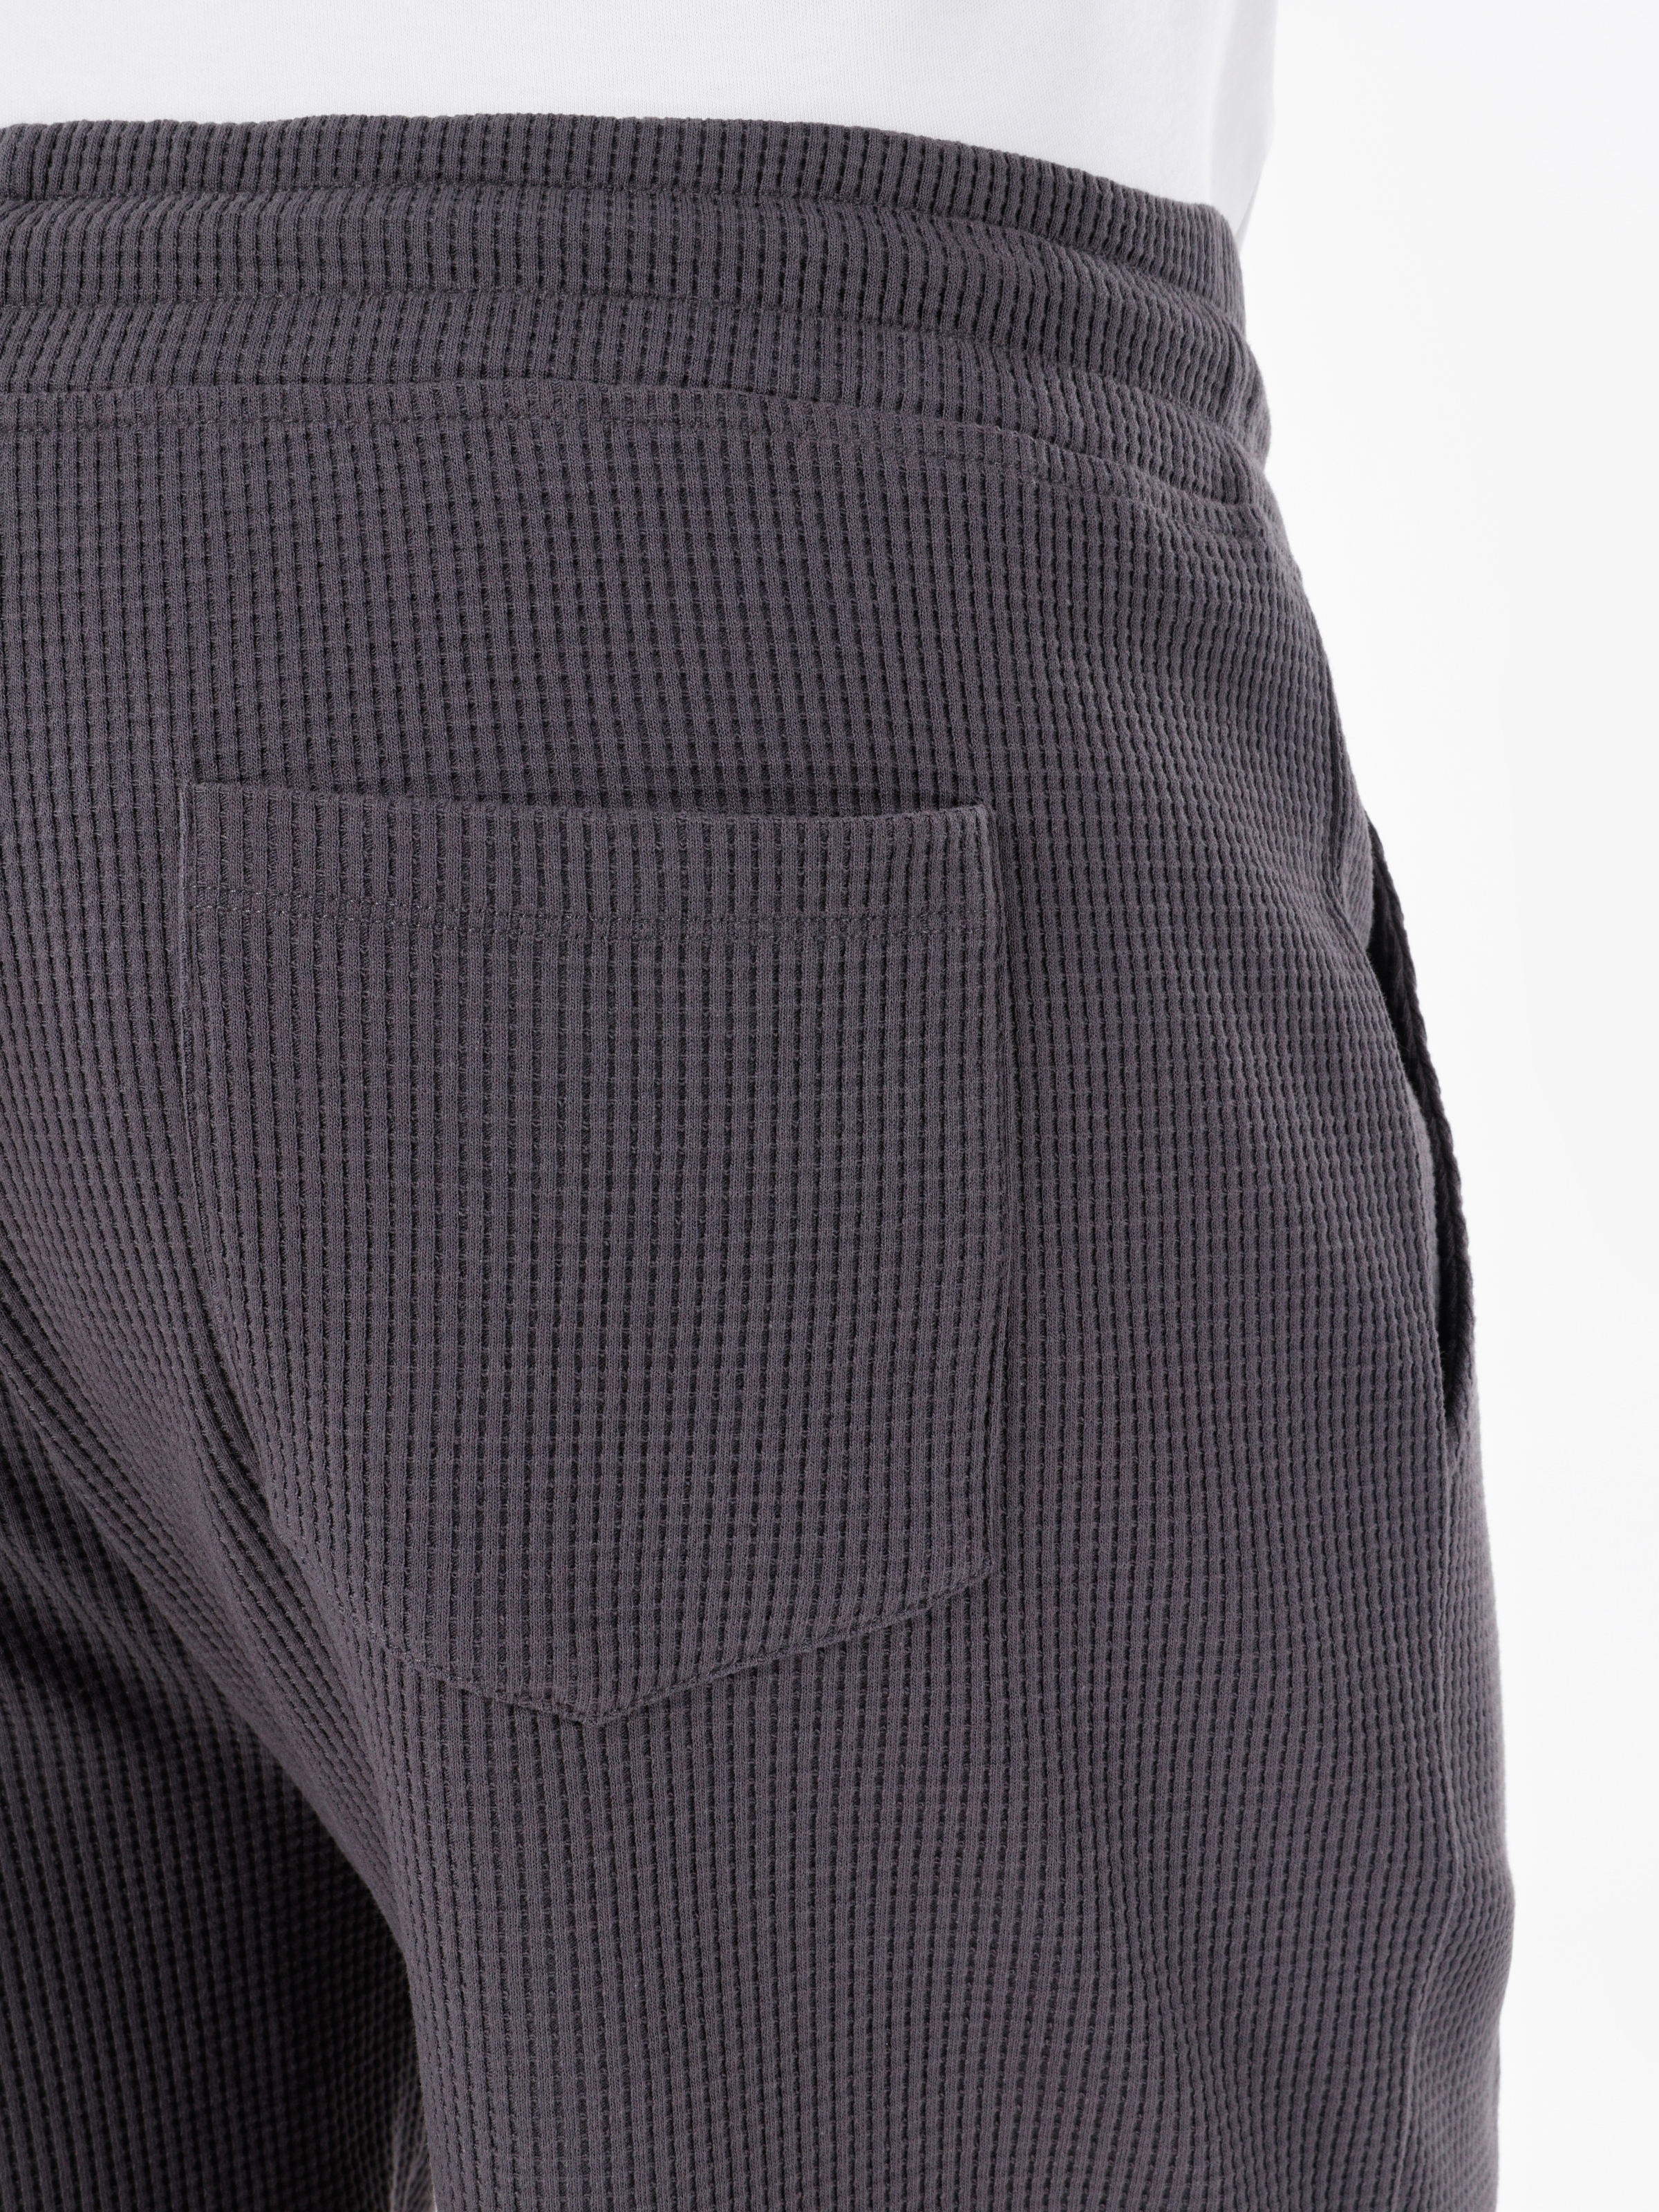 Afișați detalii pentru Short / Pantaloni Scurti De Barbati Antracit Regular Fit  